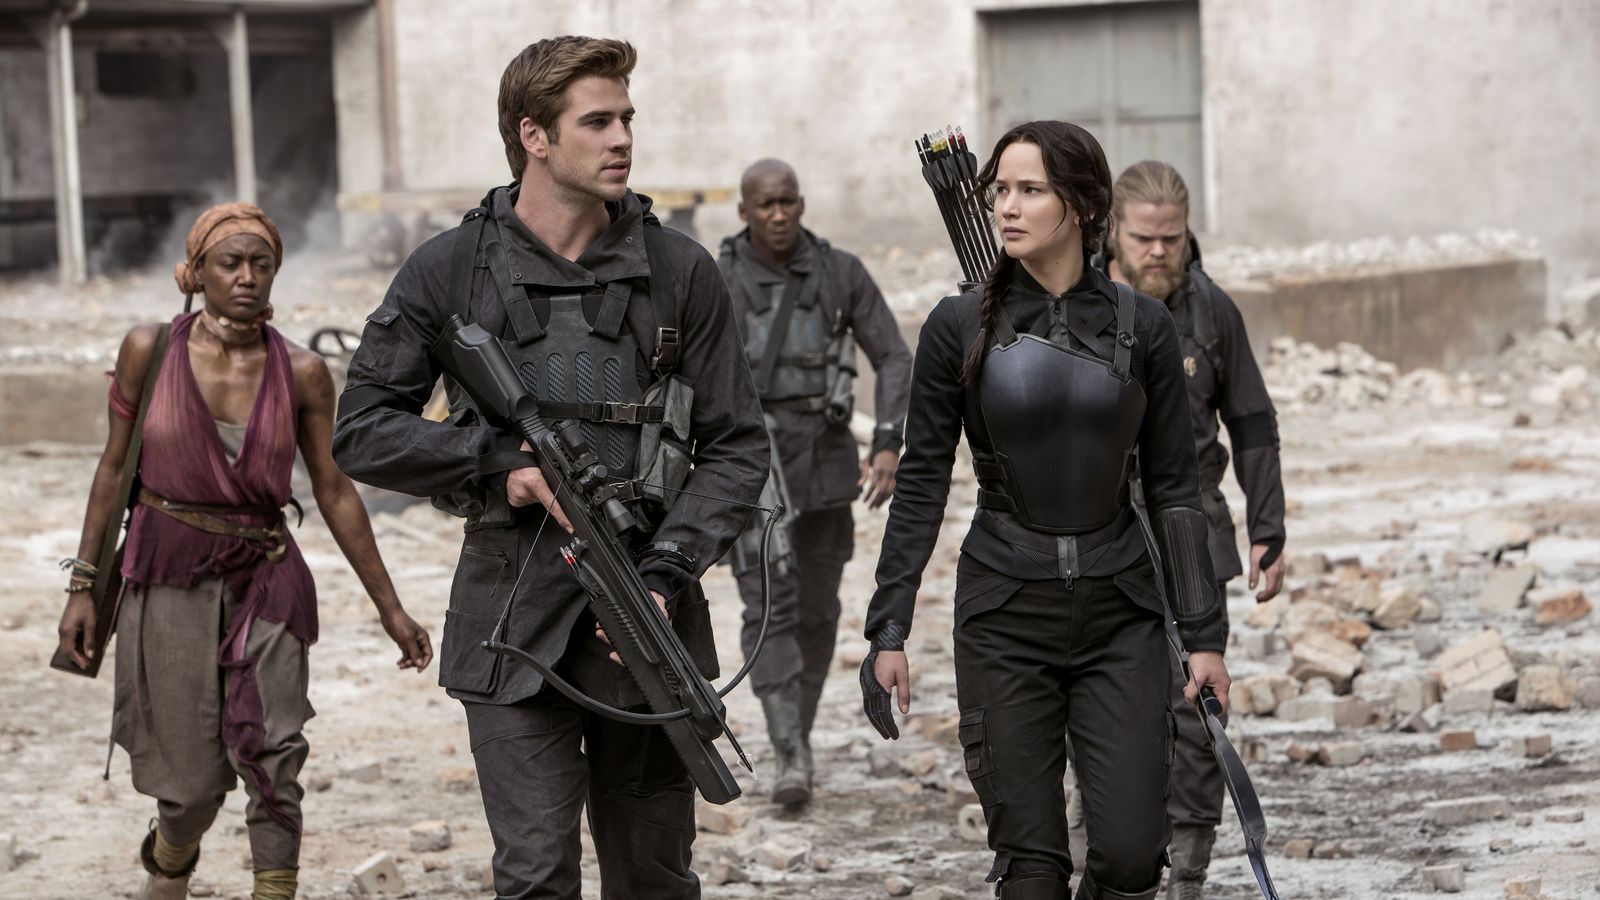 Hunger Games dostane nový film. Prequel sa zameria na udalosti v turnaji pred príchodom Katniss Everdeen